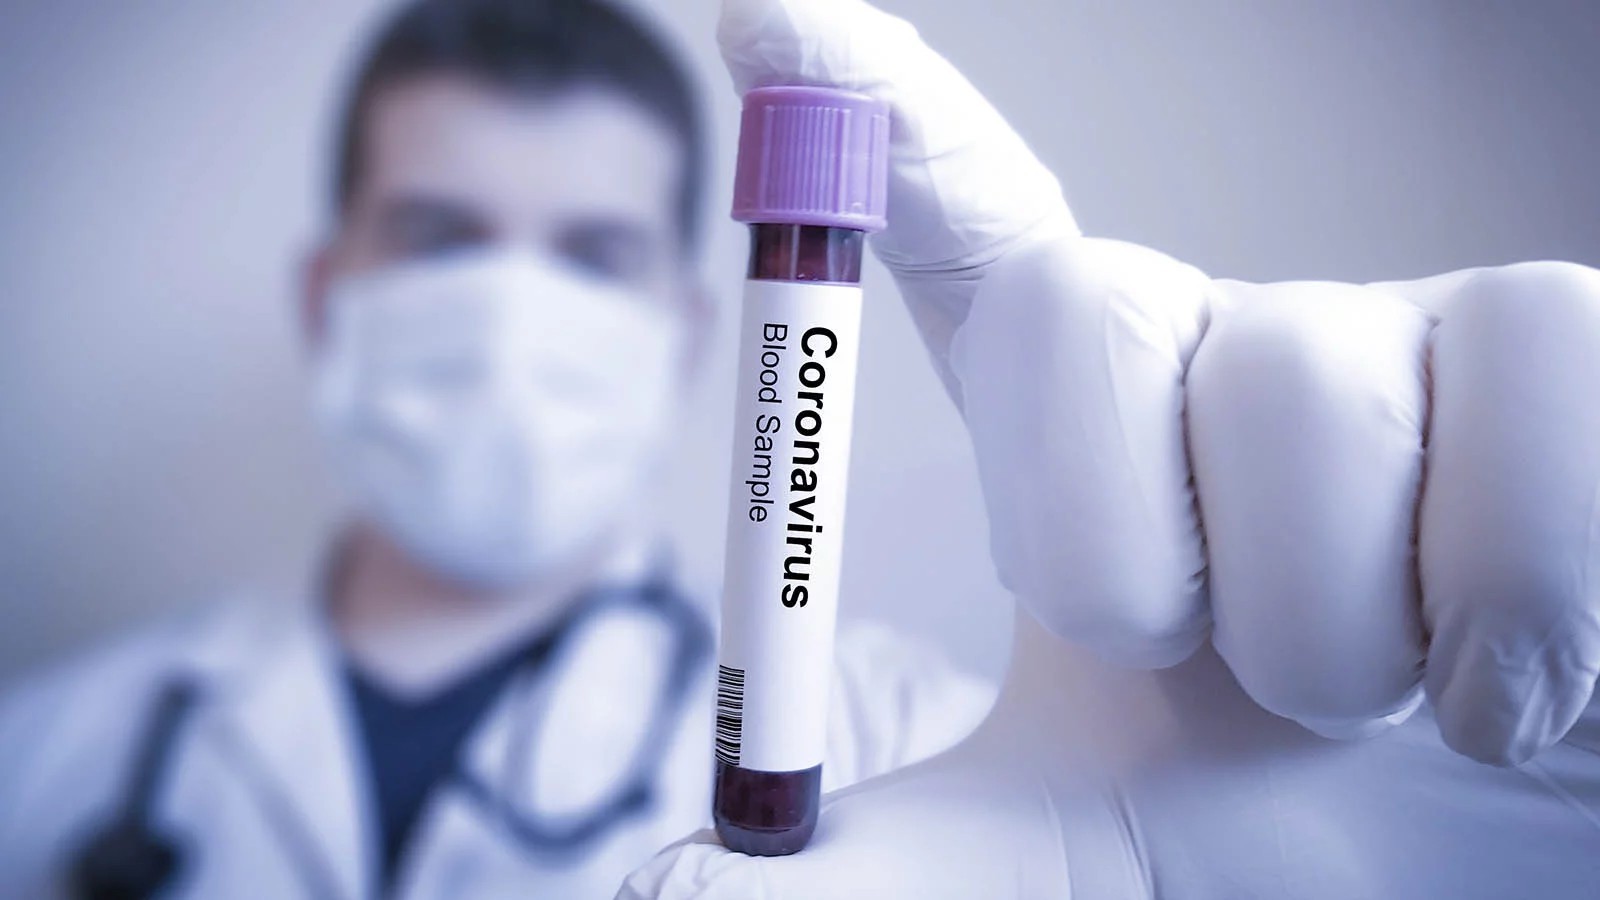 Alimlər: “Siqaret çəkənlərin koronavirusa yoluxma riski azdır”